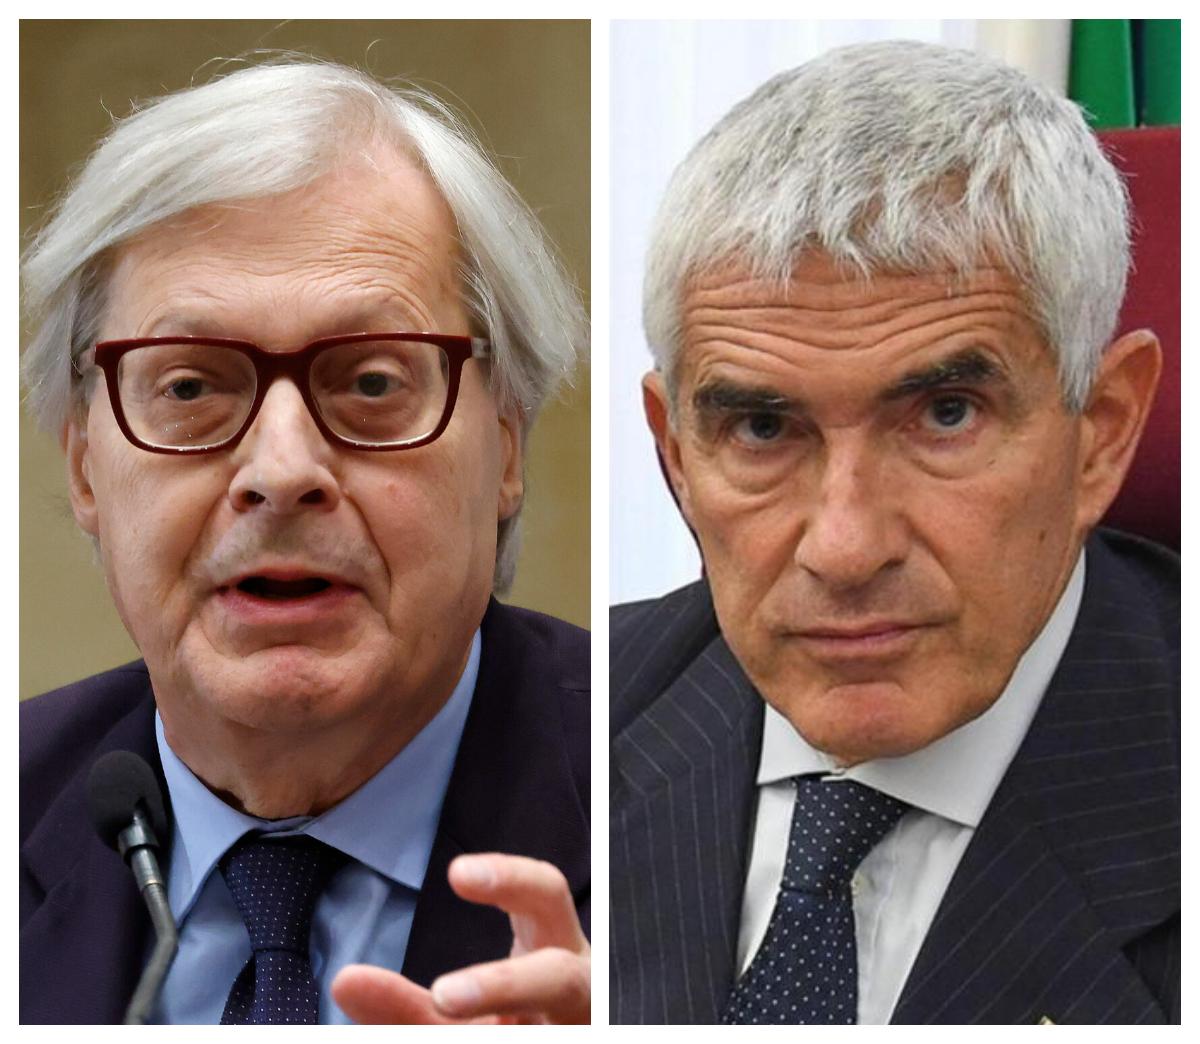 Sgarbi provoca Casini: "Noi due candidati contro a Bologna. Vincerò facile contro una statua"